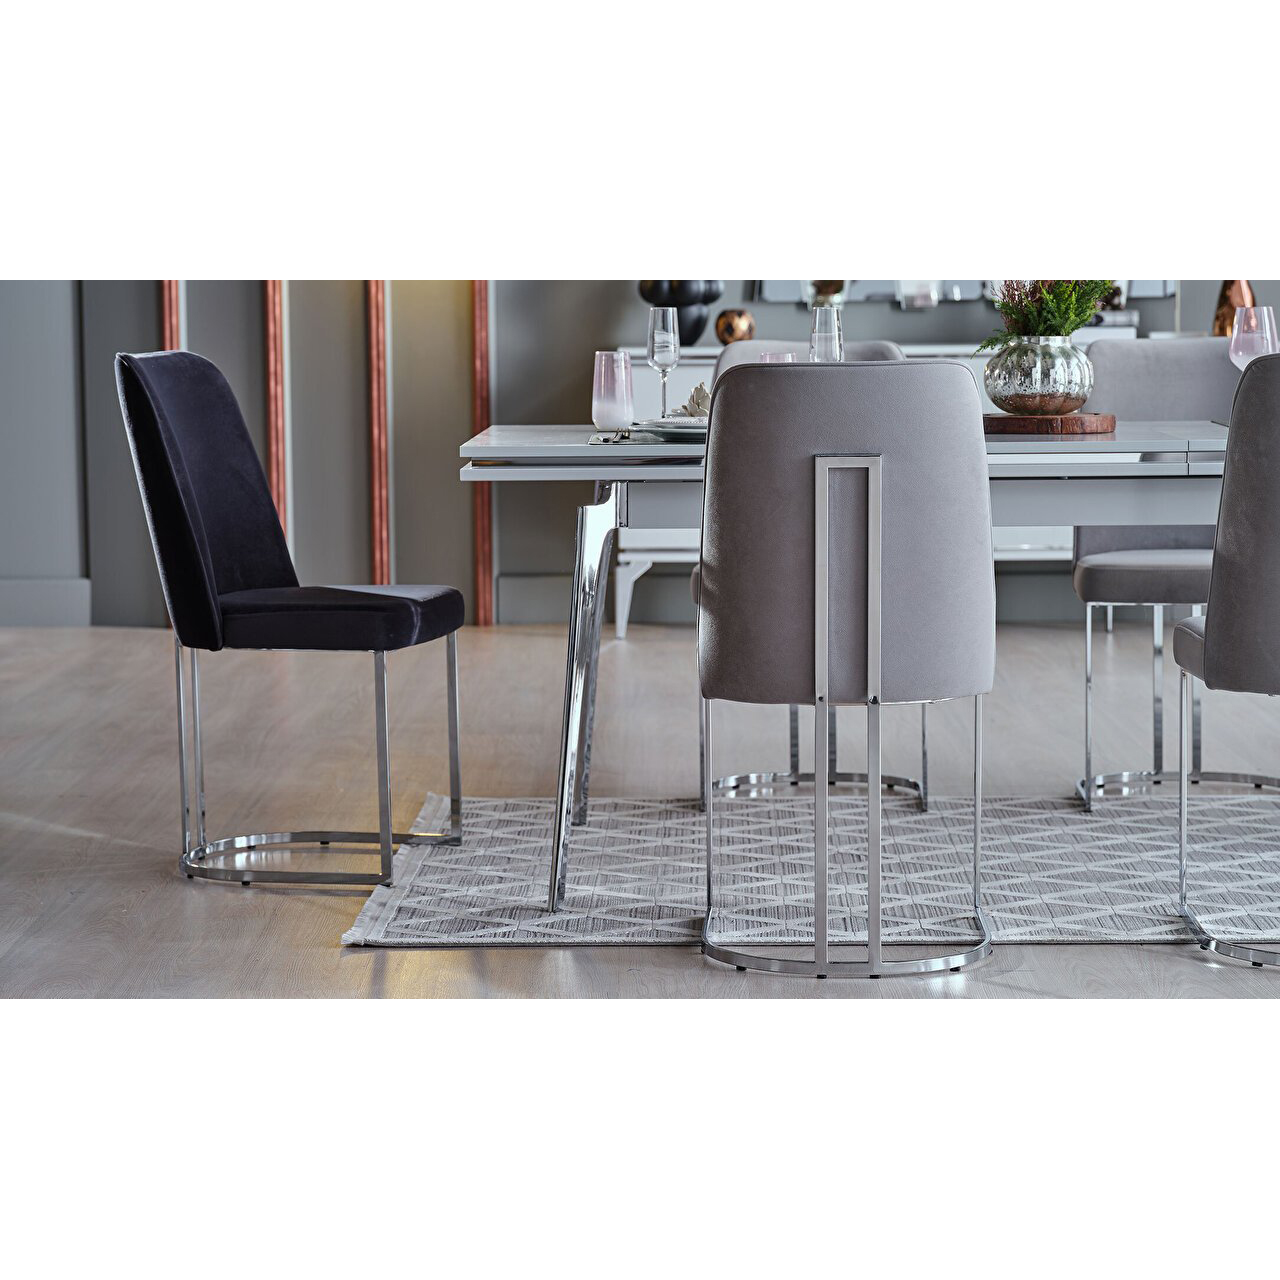 Стол обеденный Bellona Loretto, раскладной, размер 164(204)x90x80 см (LORET-14)LORET-14